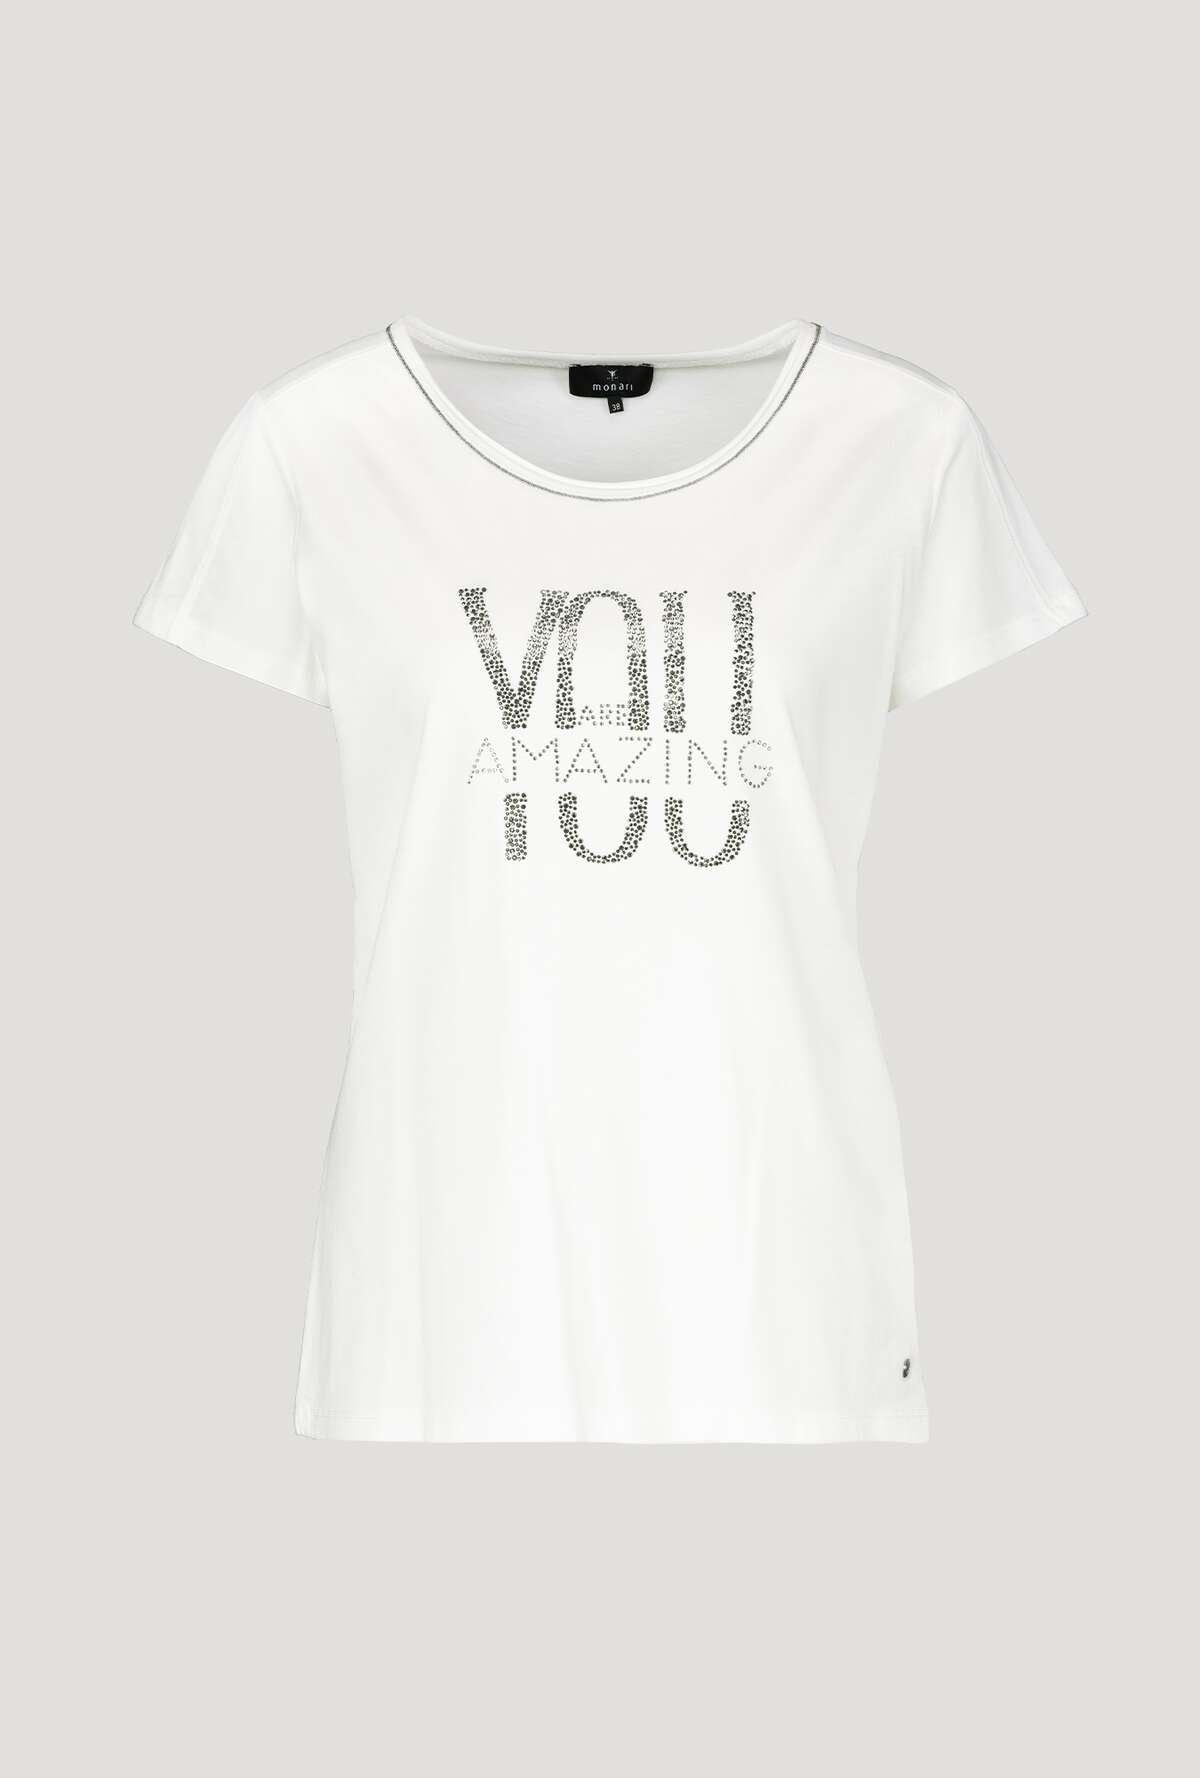 Monari Damen Statement T-Shirt mit Glitzer – Melange